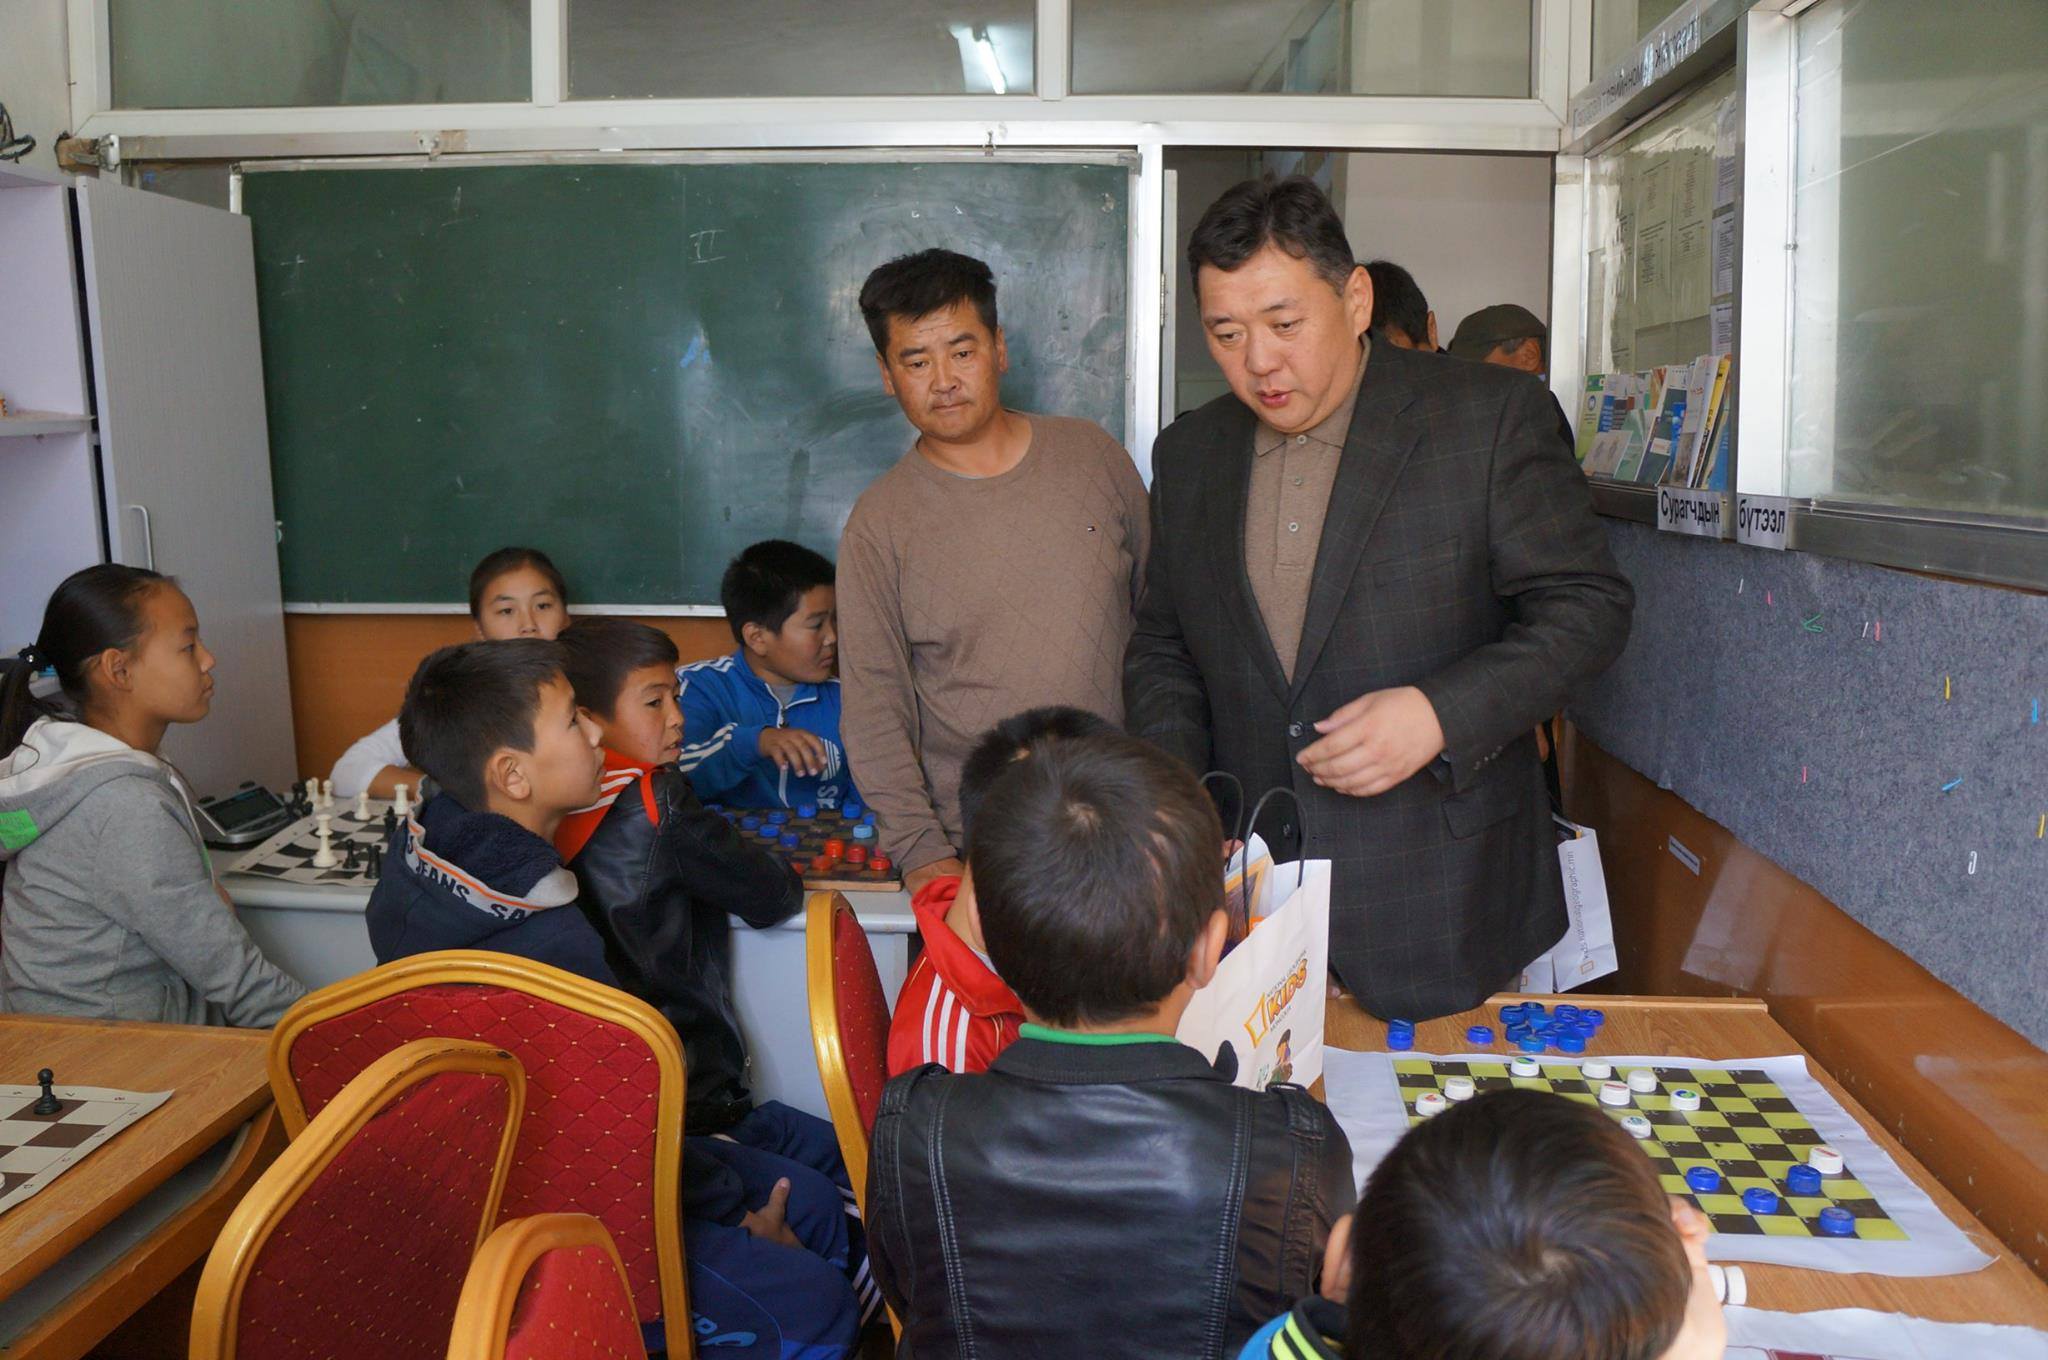 Төв аймгийн Батсүмбэр сумын оюунлаг, шатарч хүүхдүүдэд Шатрын танхим хүлээлгэж өглөө